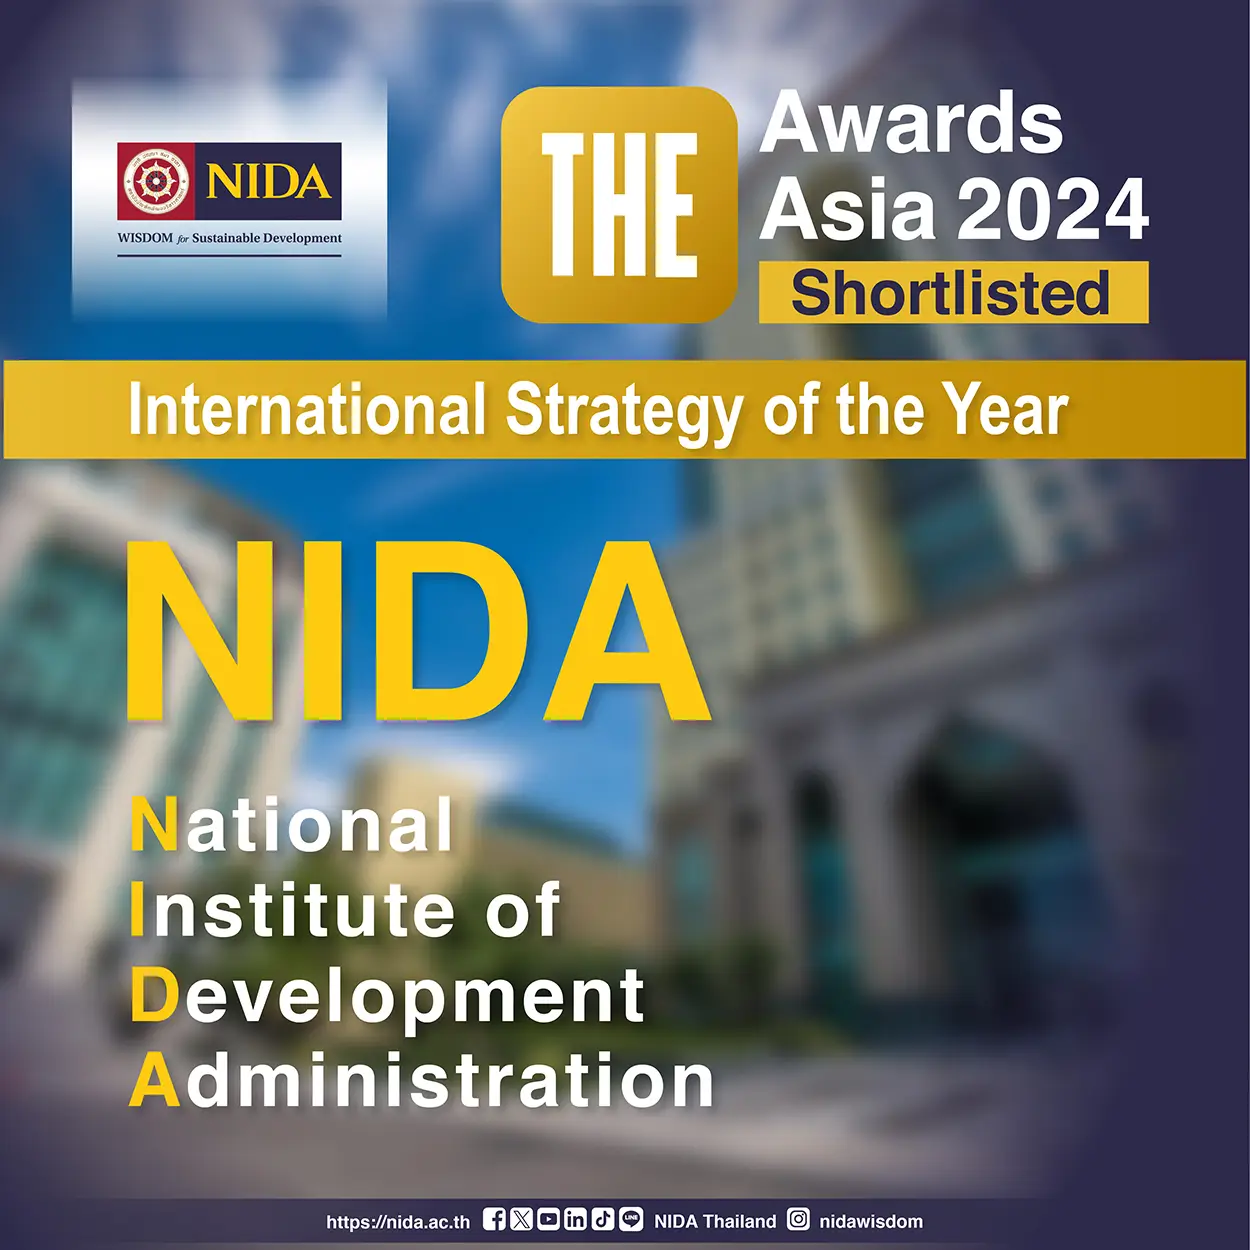 NIDA ได้รับคัดเลือกจาก THE Awards Asia 2024 ให้เป็น 1 ใน 8 มหาวิทยาลัยของเอเชีย